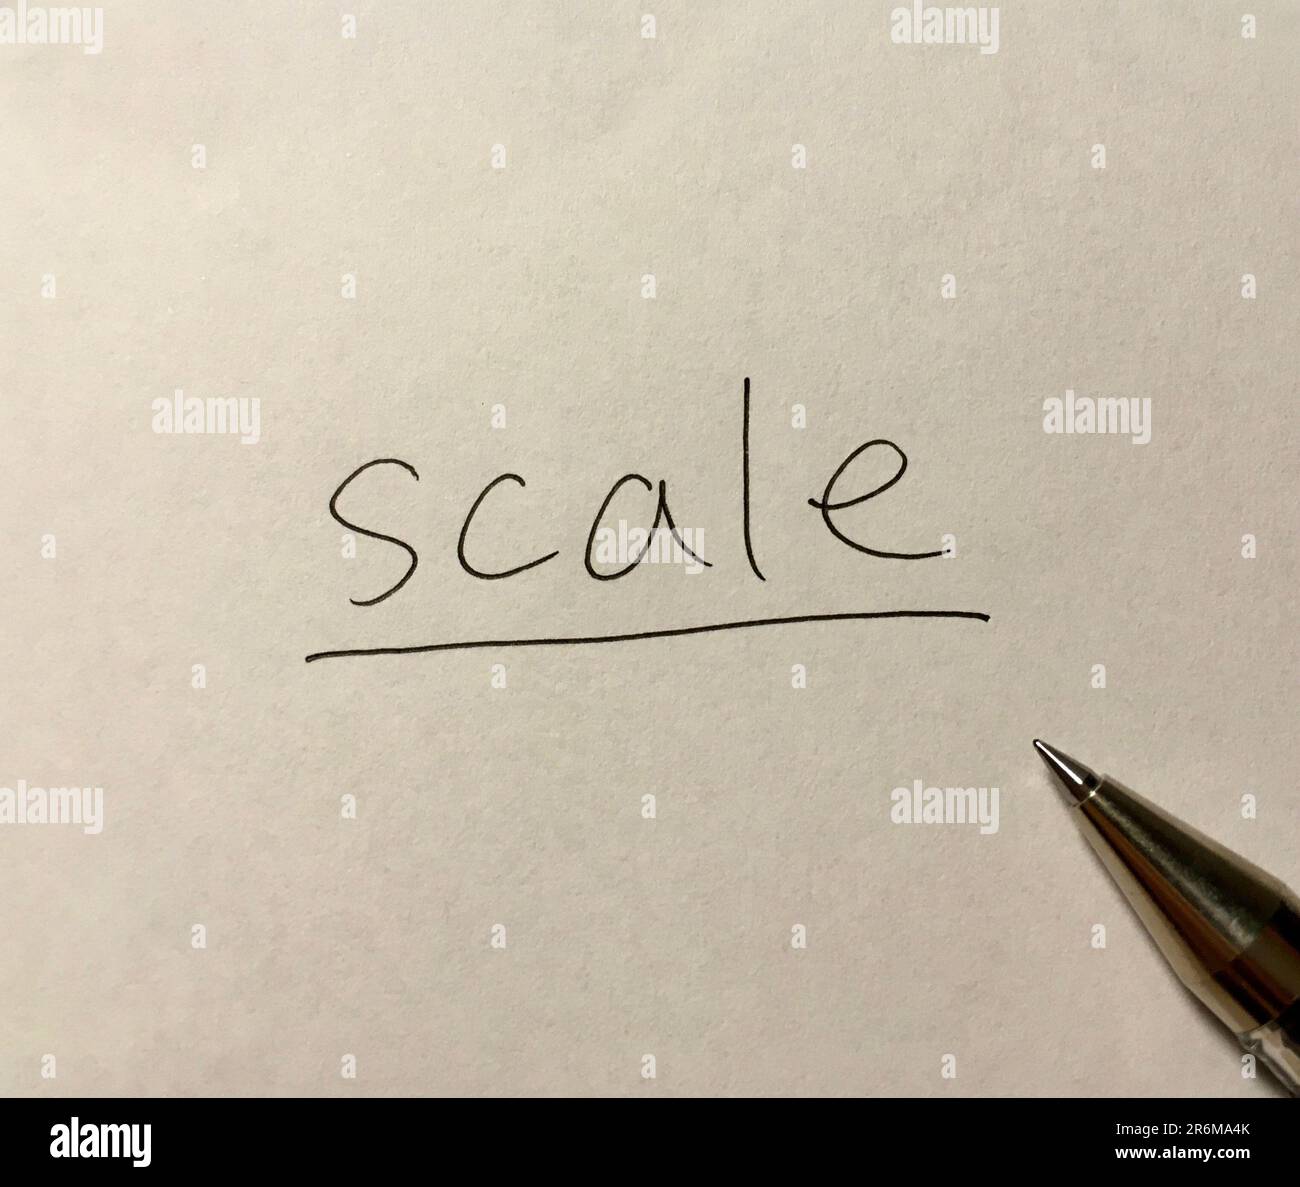 Palabra de concepto de escala sobre fondo de papel Foto de stock